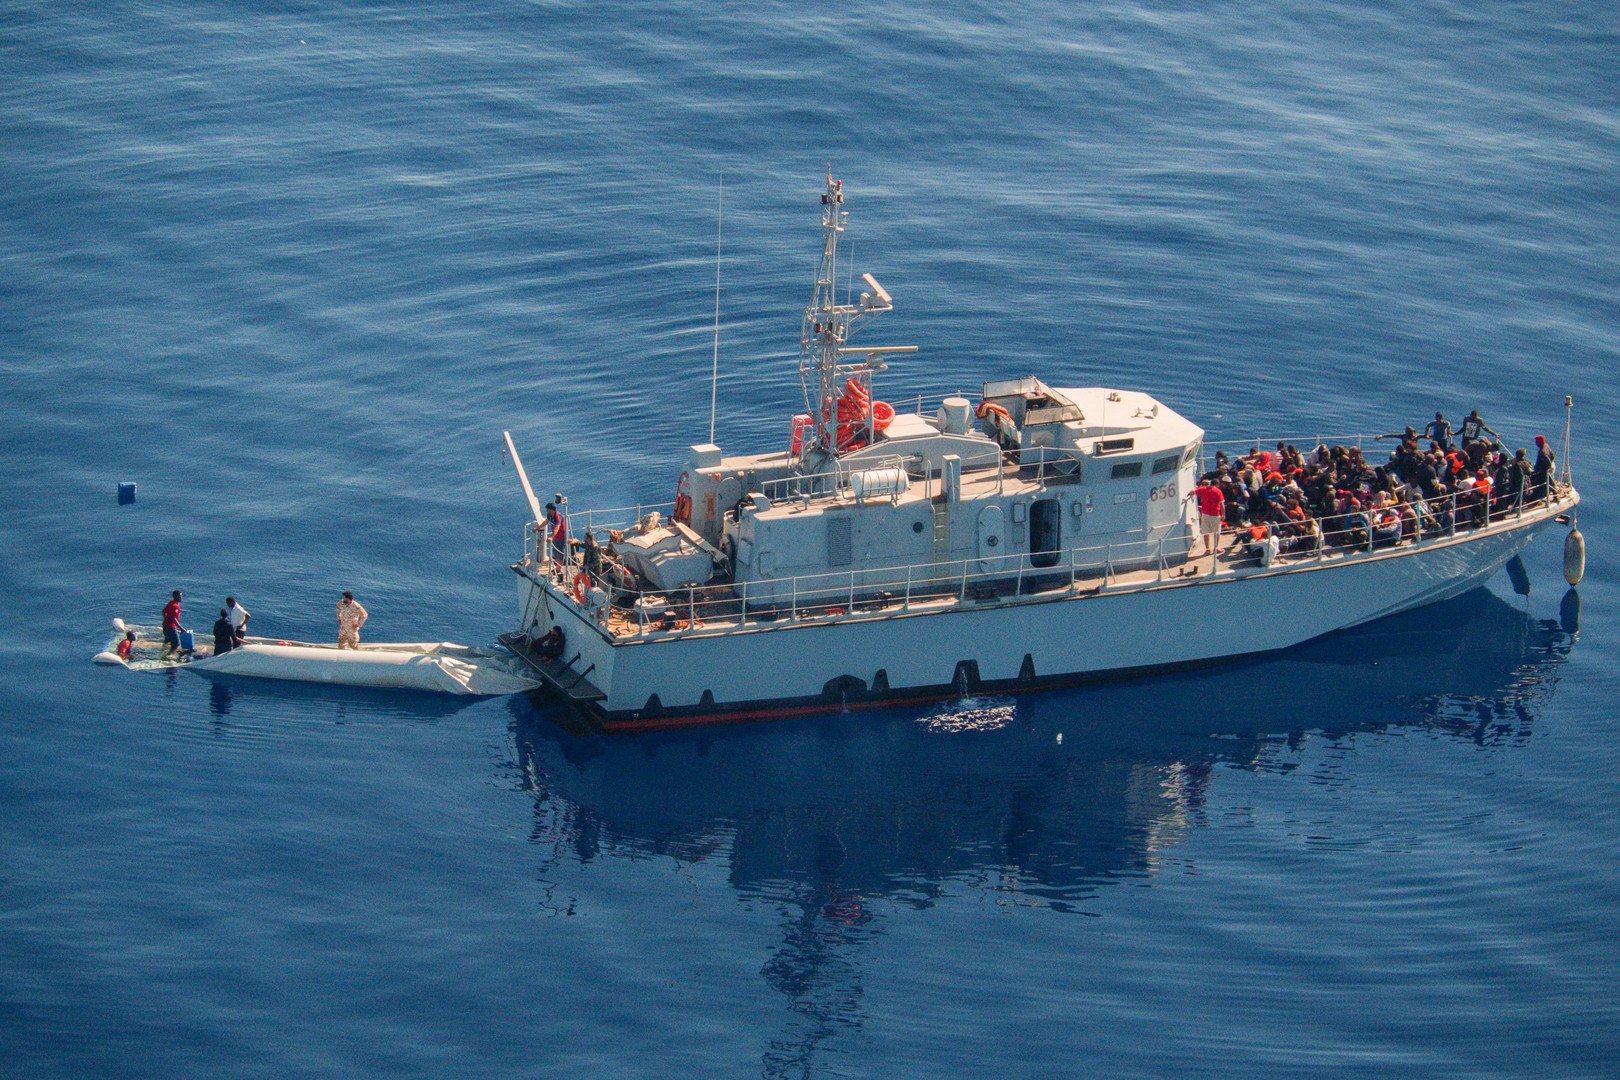 البحرية الليبية تنقذ نحو 300 مهاجر قبالة ساحل طرابلس الشرقي